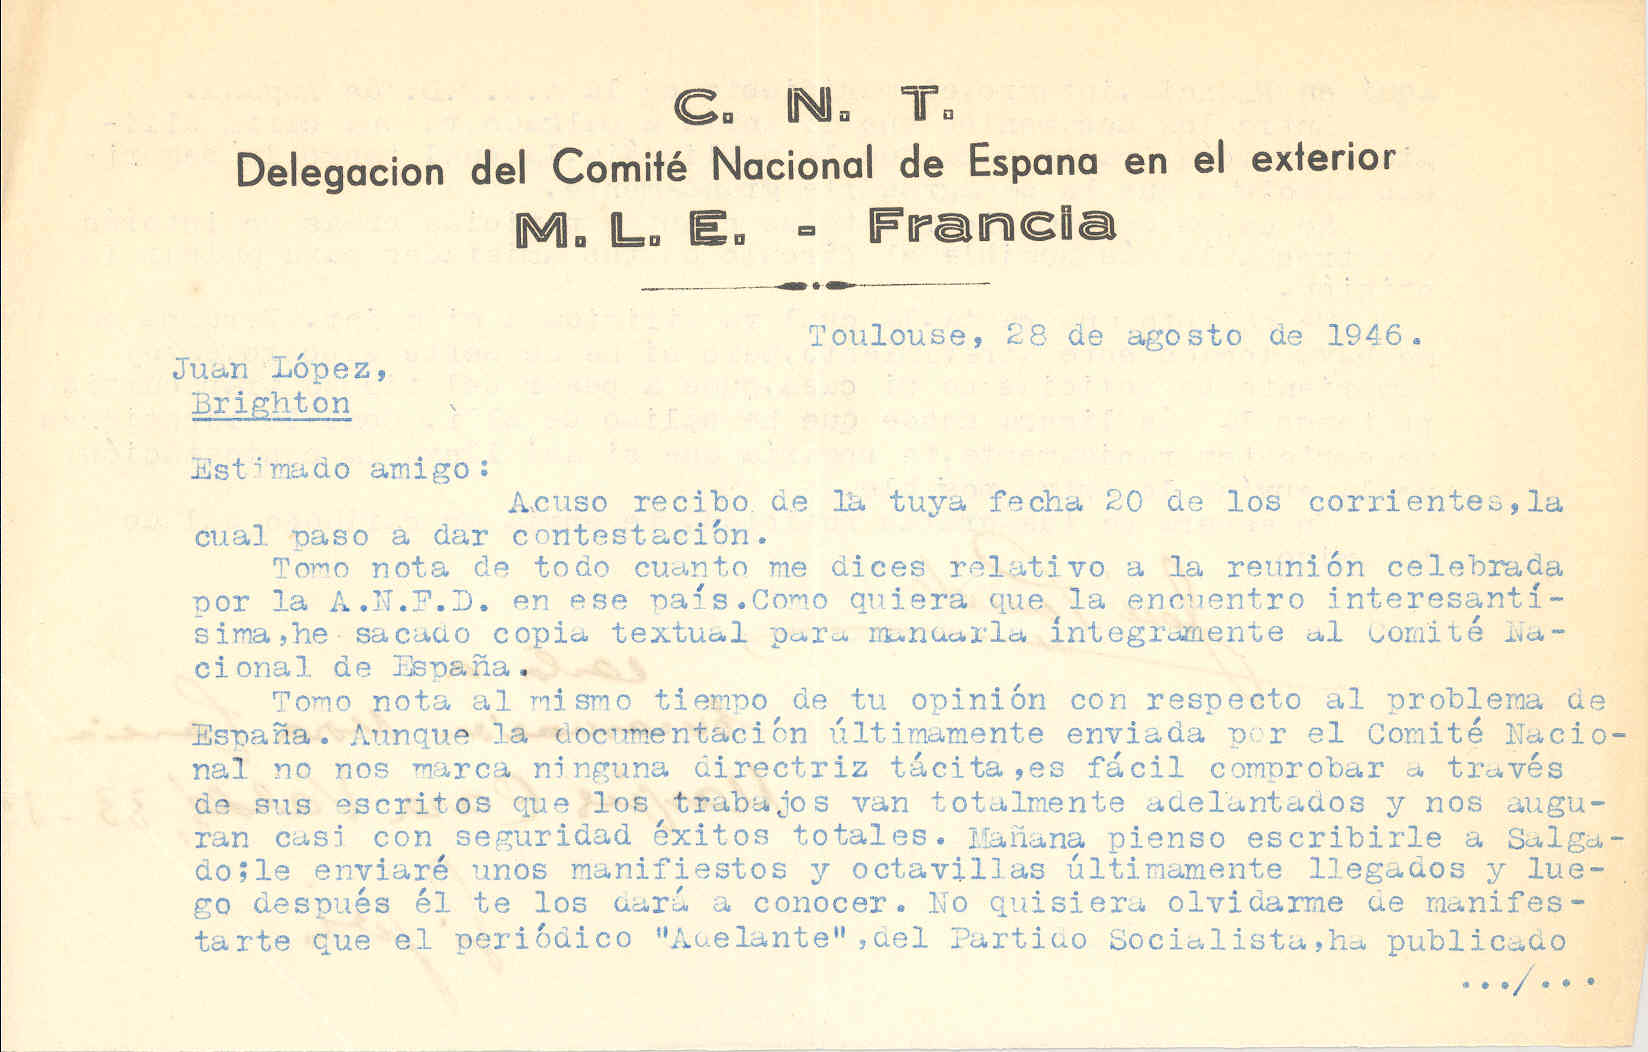 Carta de José Penido en la que comenta el interés de una reunión celebrada por la Alianza Nacional de Fuerzas Democráticas